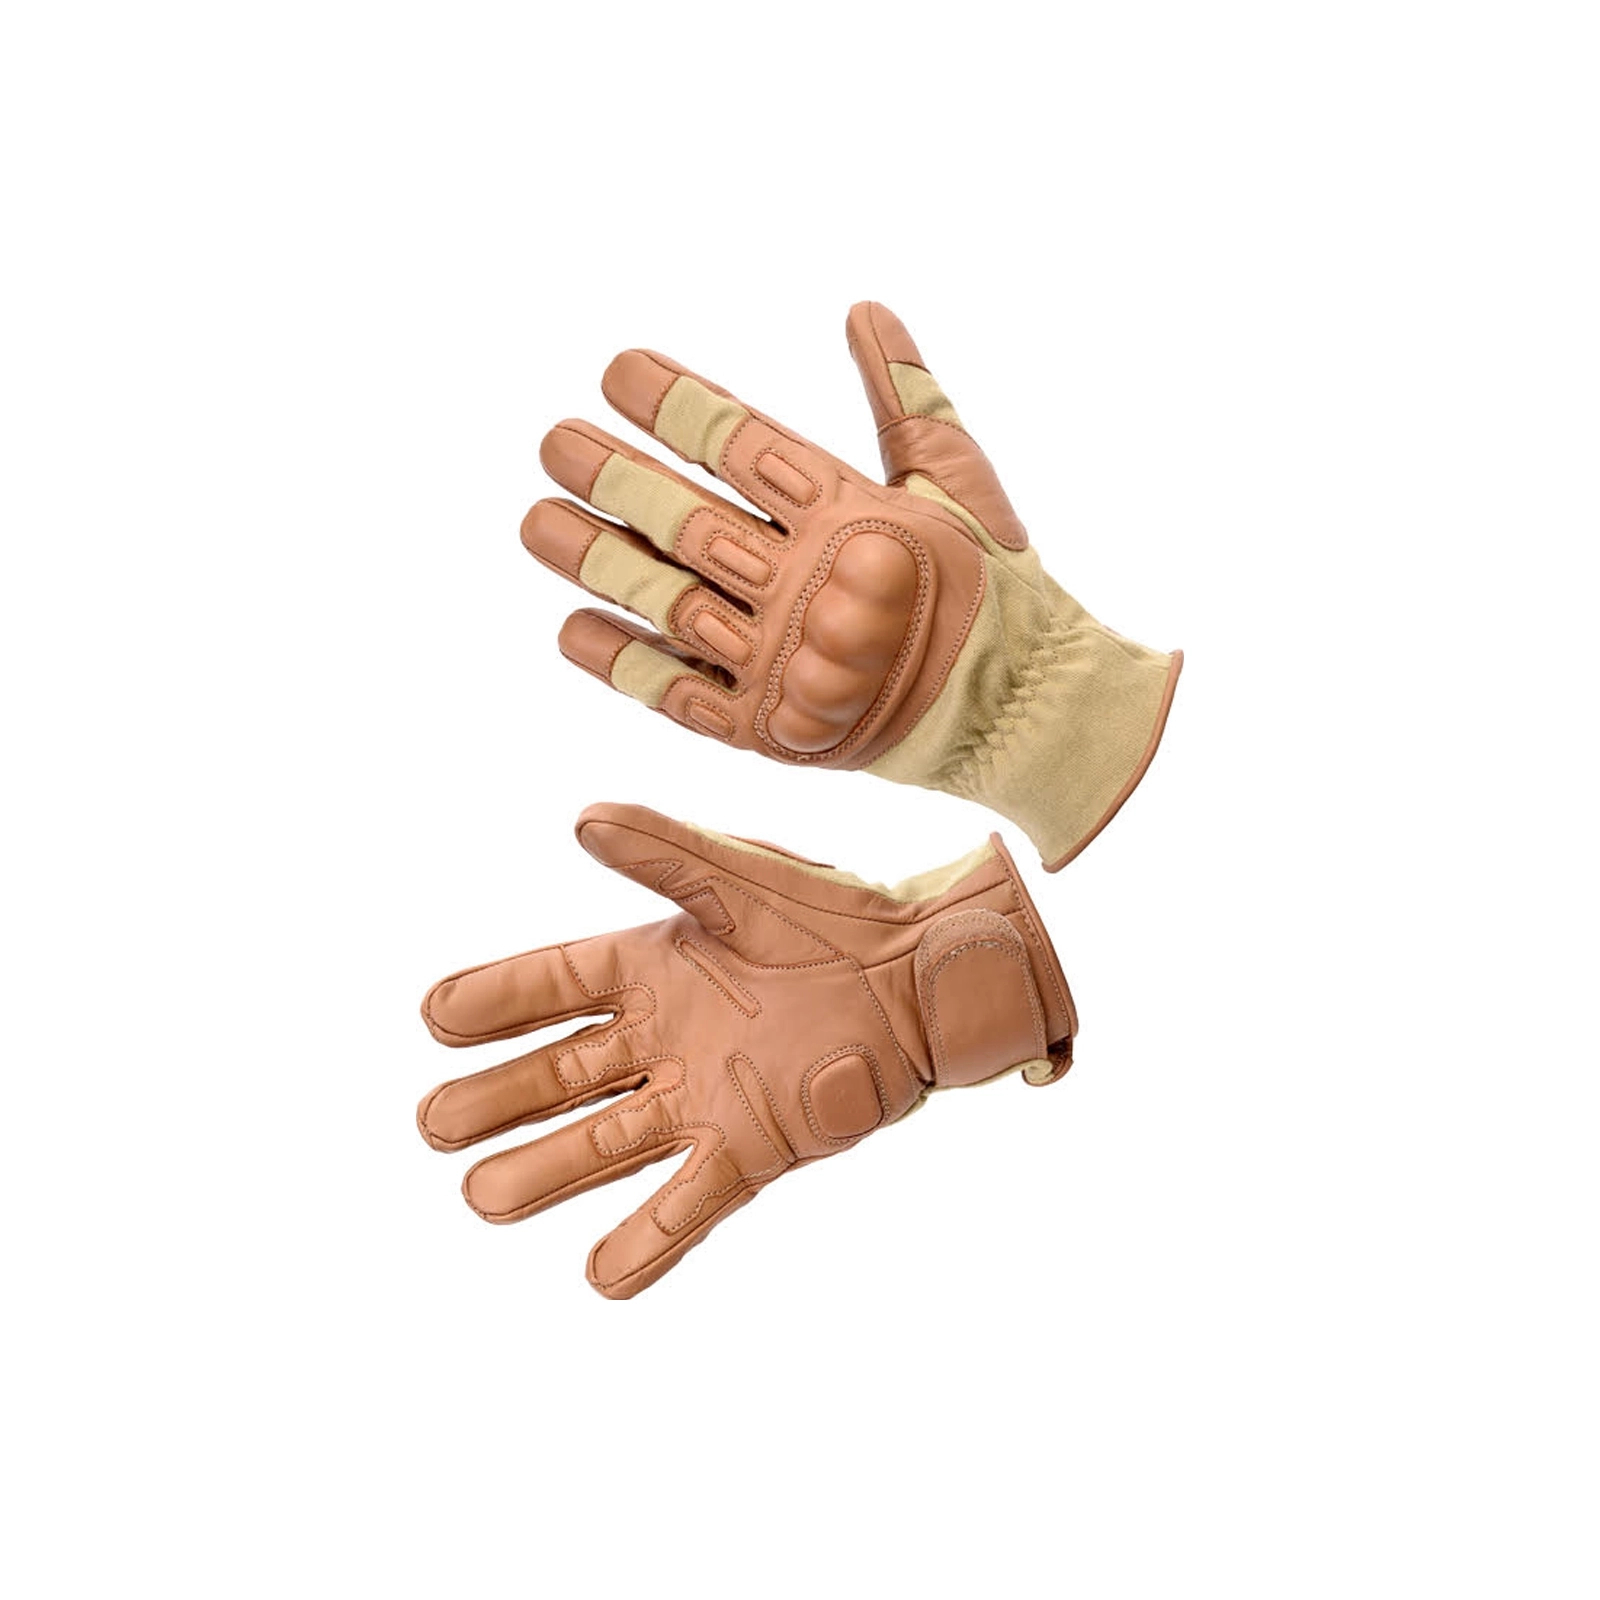 Тактические перчатки Defcon 5 Glove Nomex/Kevlar Folgore 2010 Coyote Tan M (D5-GLBPF2010 CT/M)